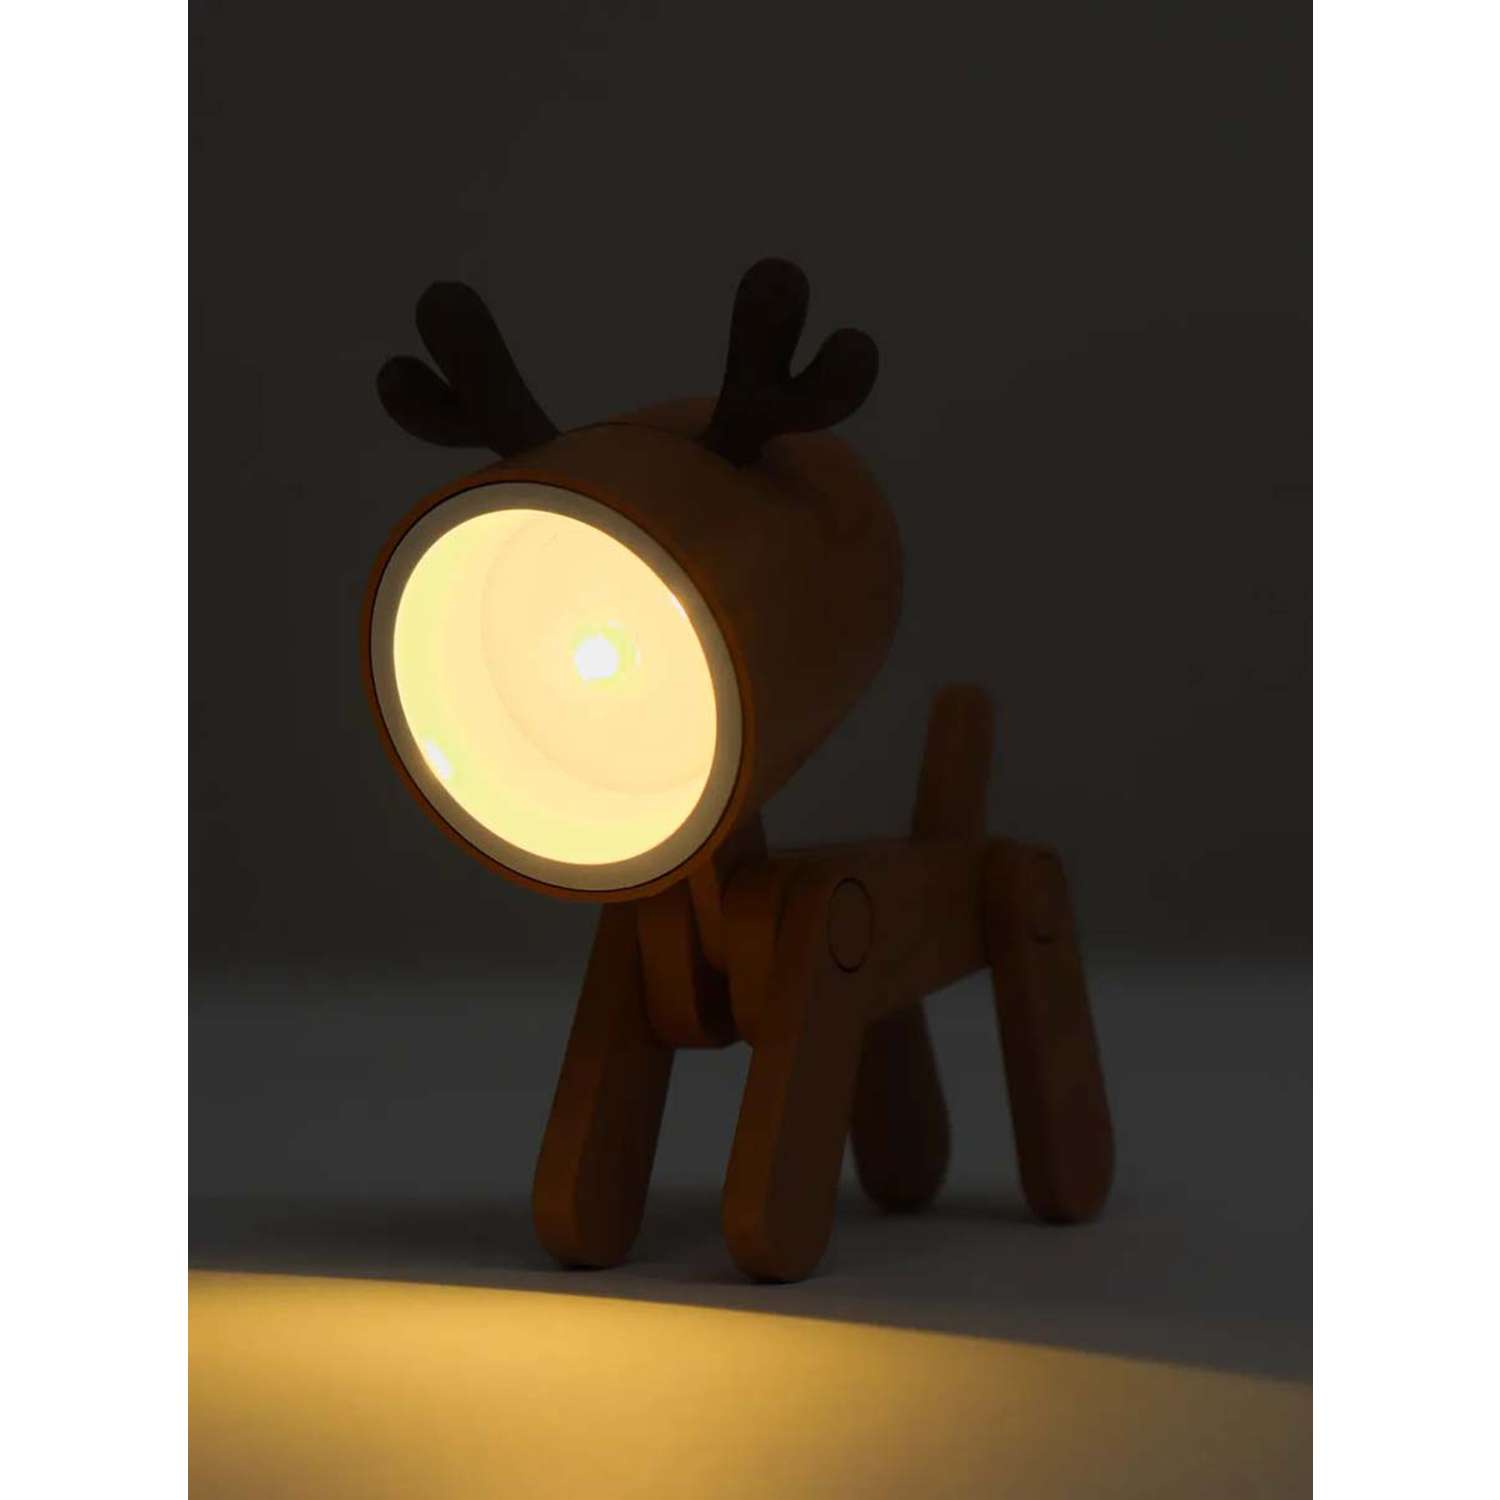 Светильник ночник LATS игрушка робот олень на батарейках - фото 13